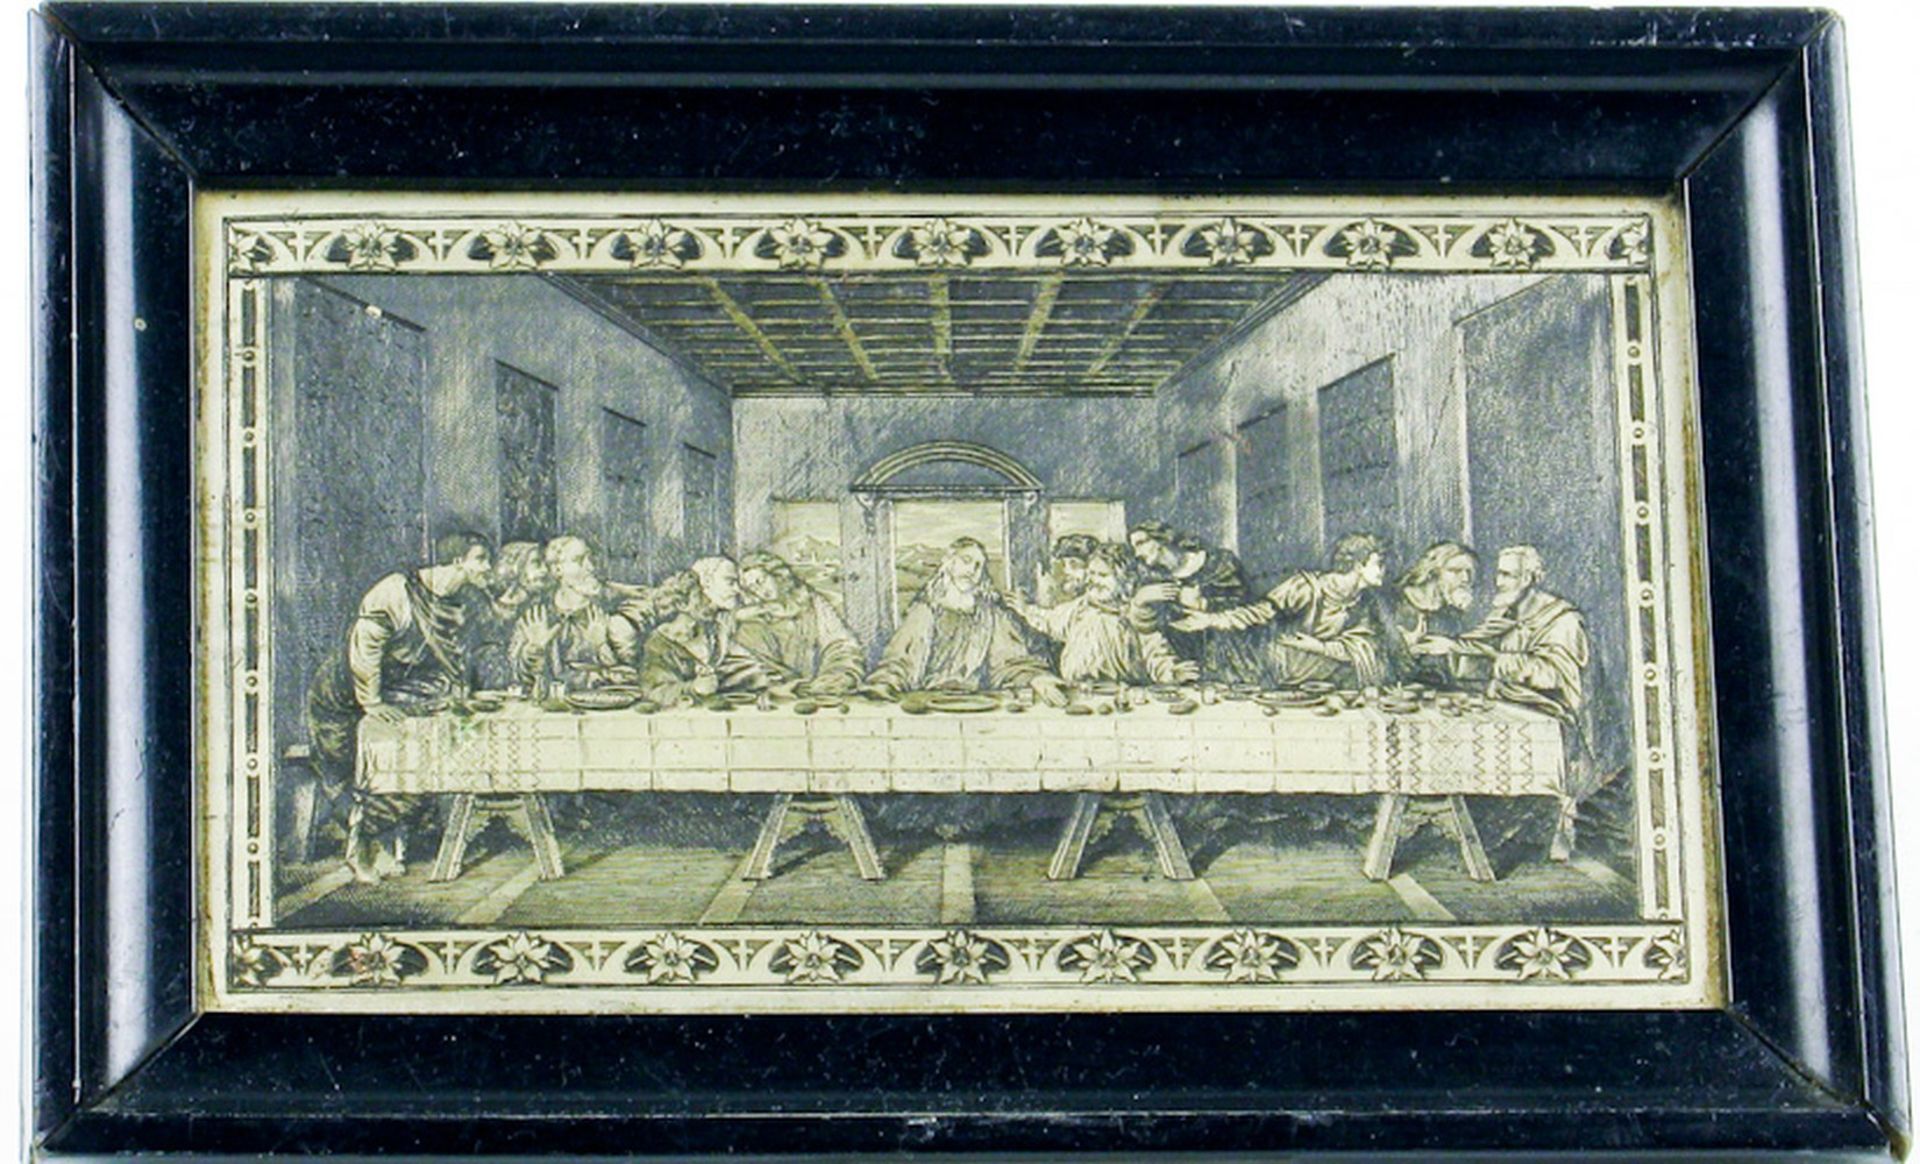 Das "Heilige Abendmahl" nach Leonardo da Vinci, als Druckplatte. Gravierte Weissmetallplatte, teils